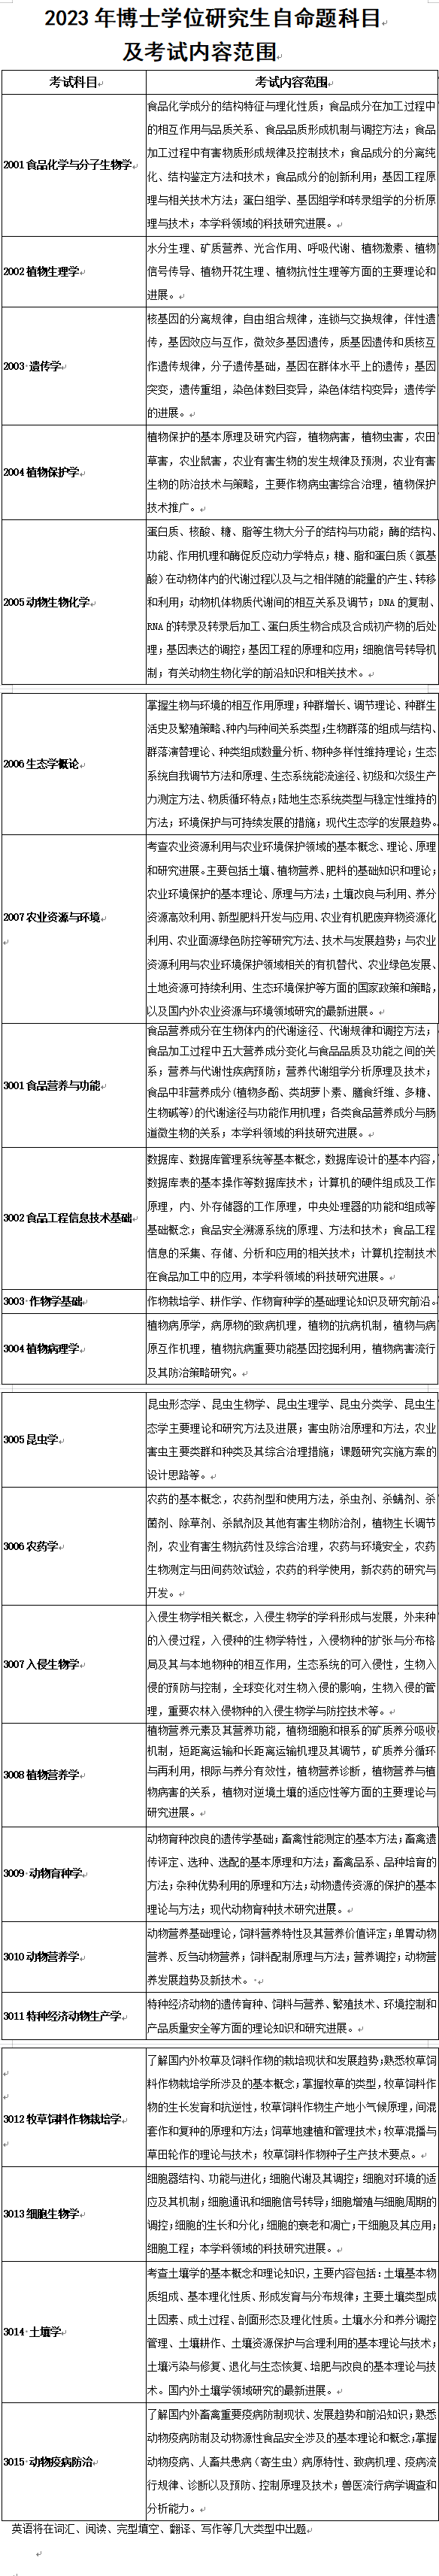 云南农业大学2023年博士学位研究生考试内容范围